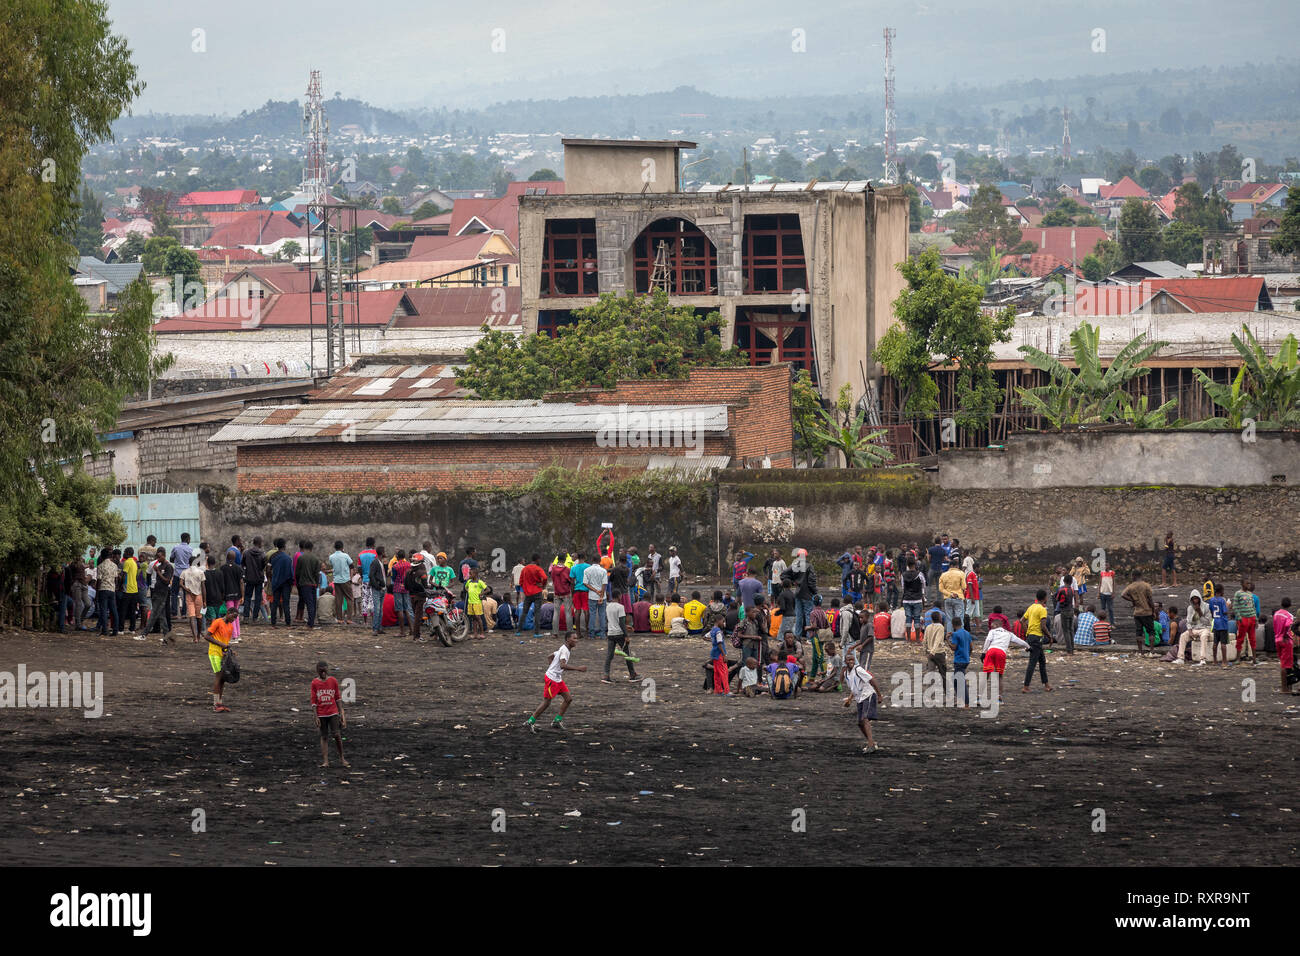 Street scene in Goma, Democratic Republic of Congo Stock Photo